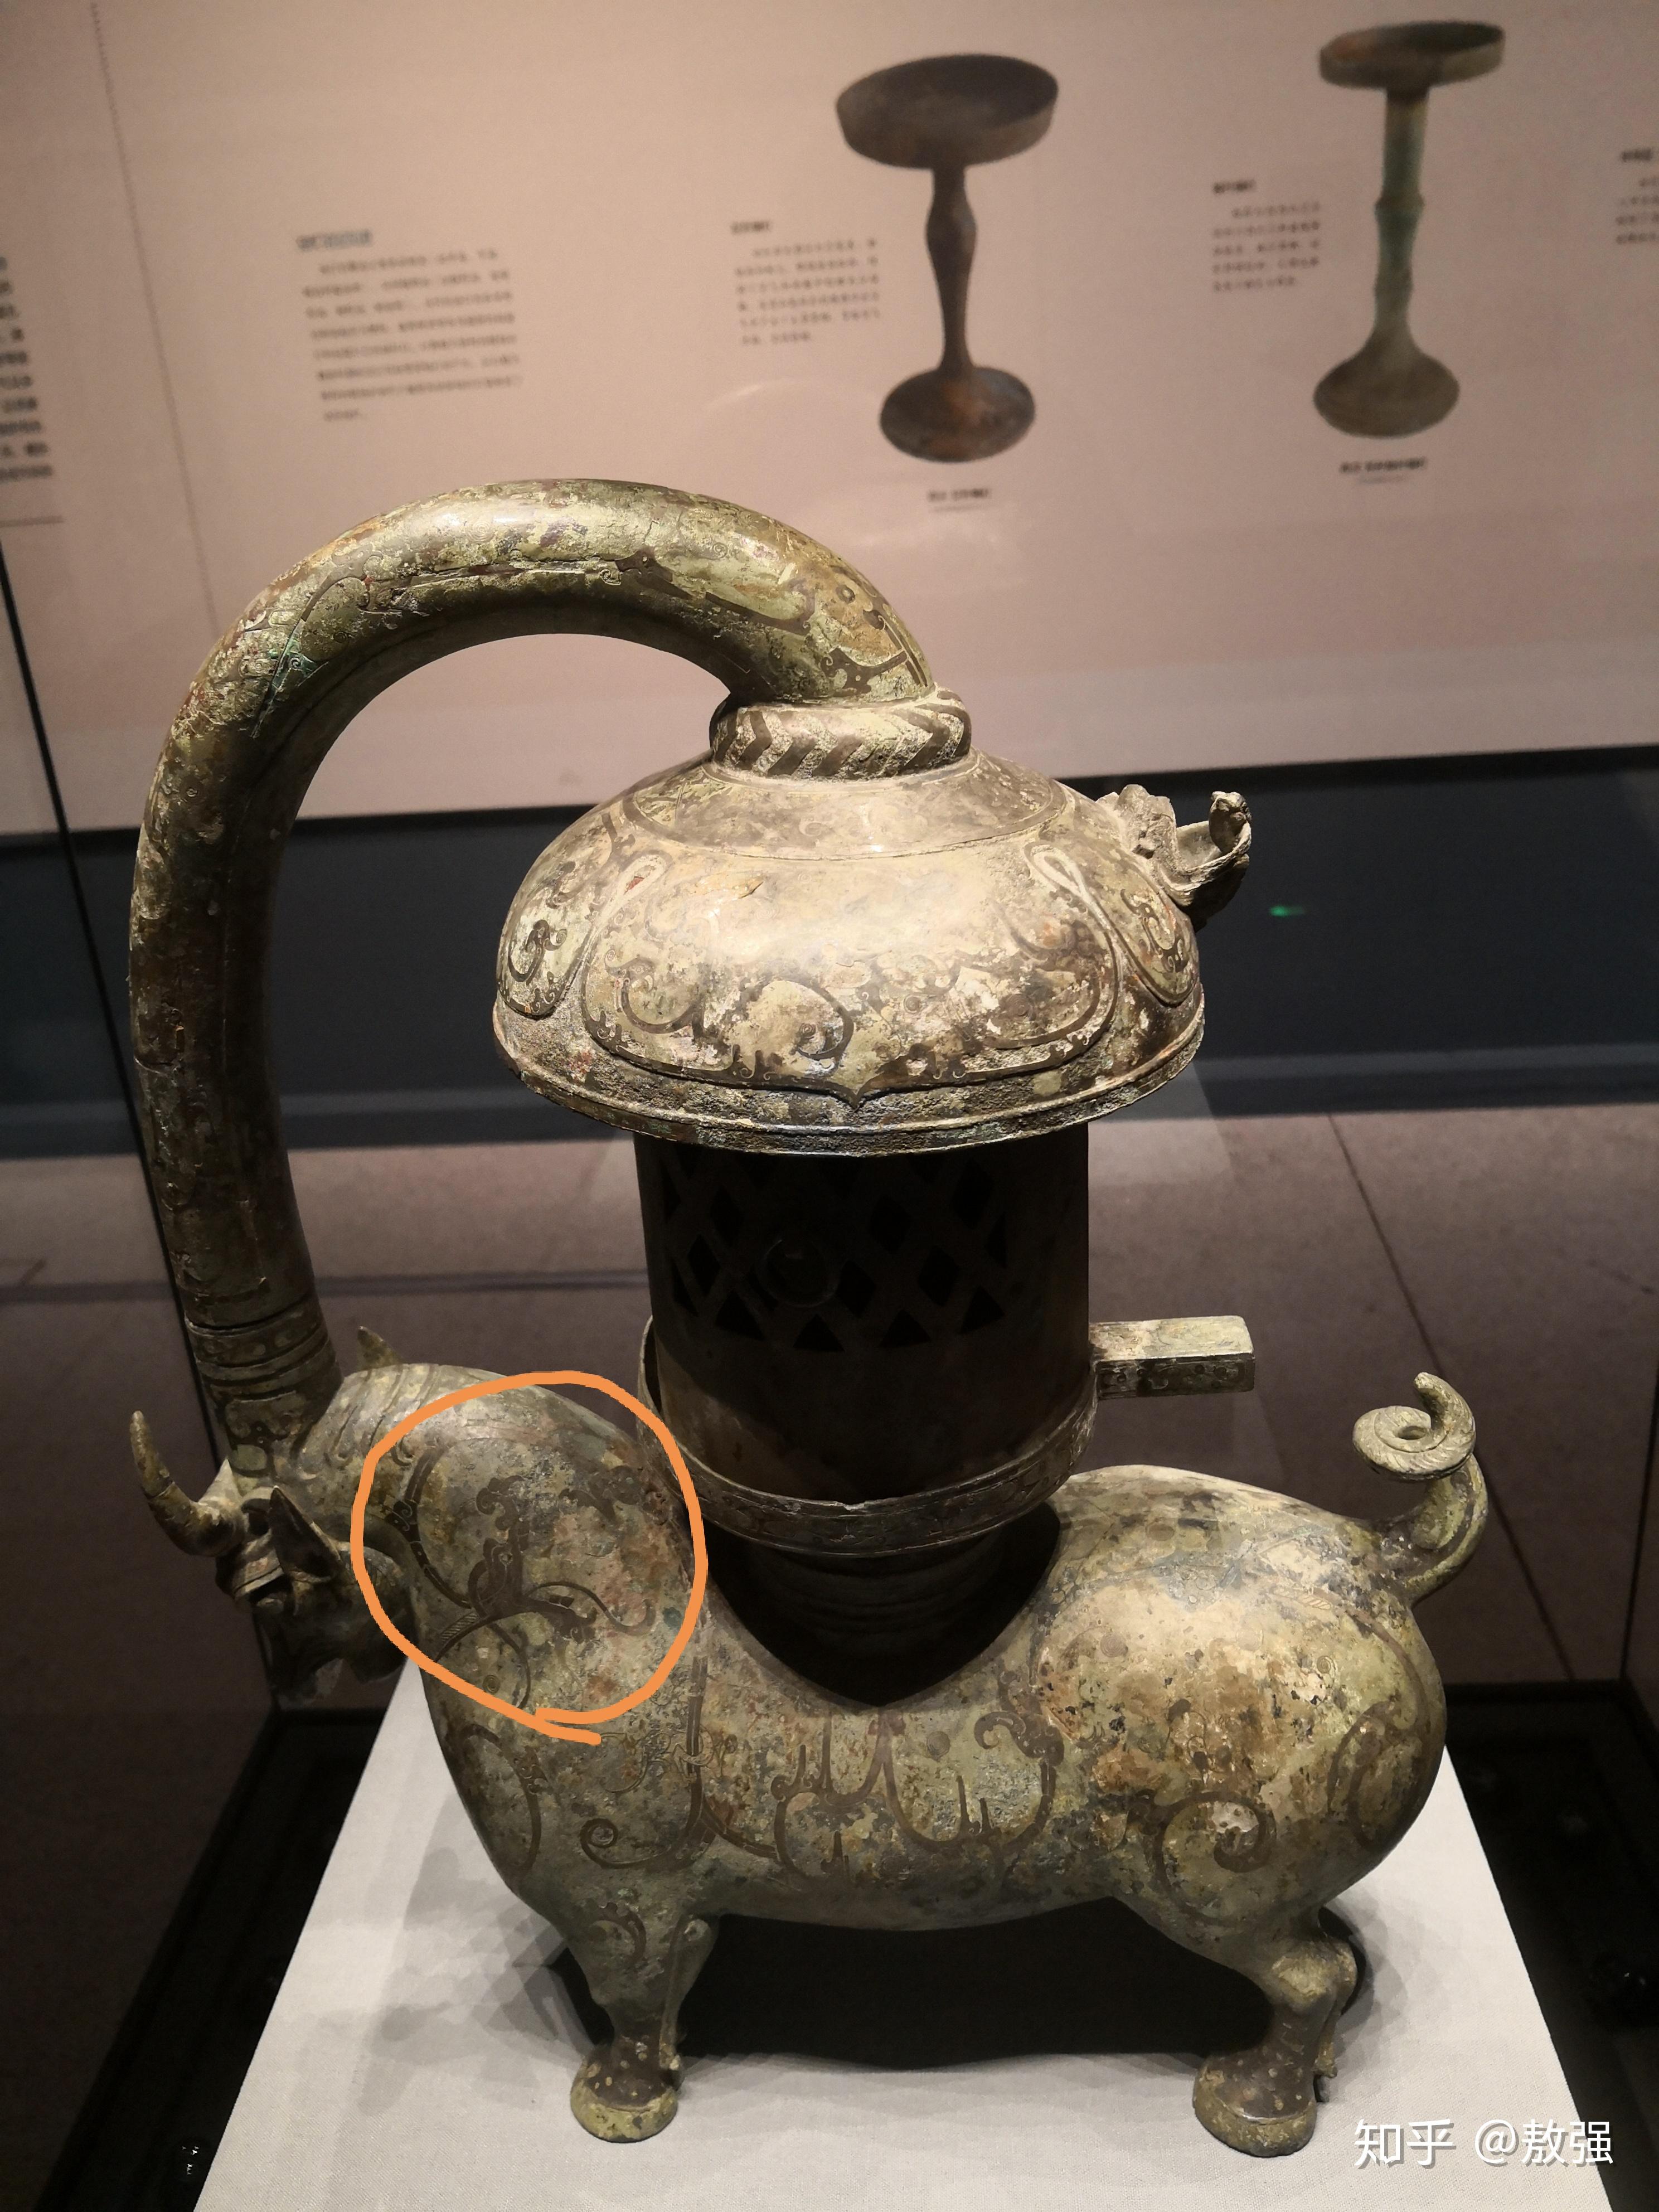 从龙的形象来判断江苏扬州甘泉二号东汉墓出土错银铜牛灯的年代